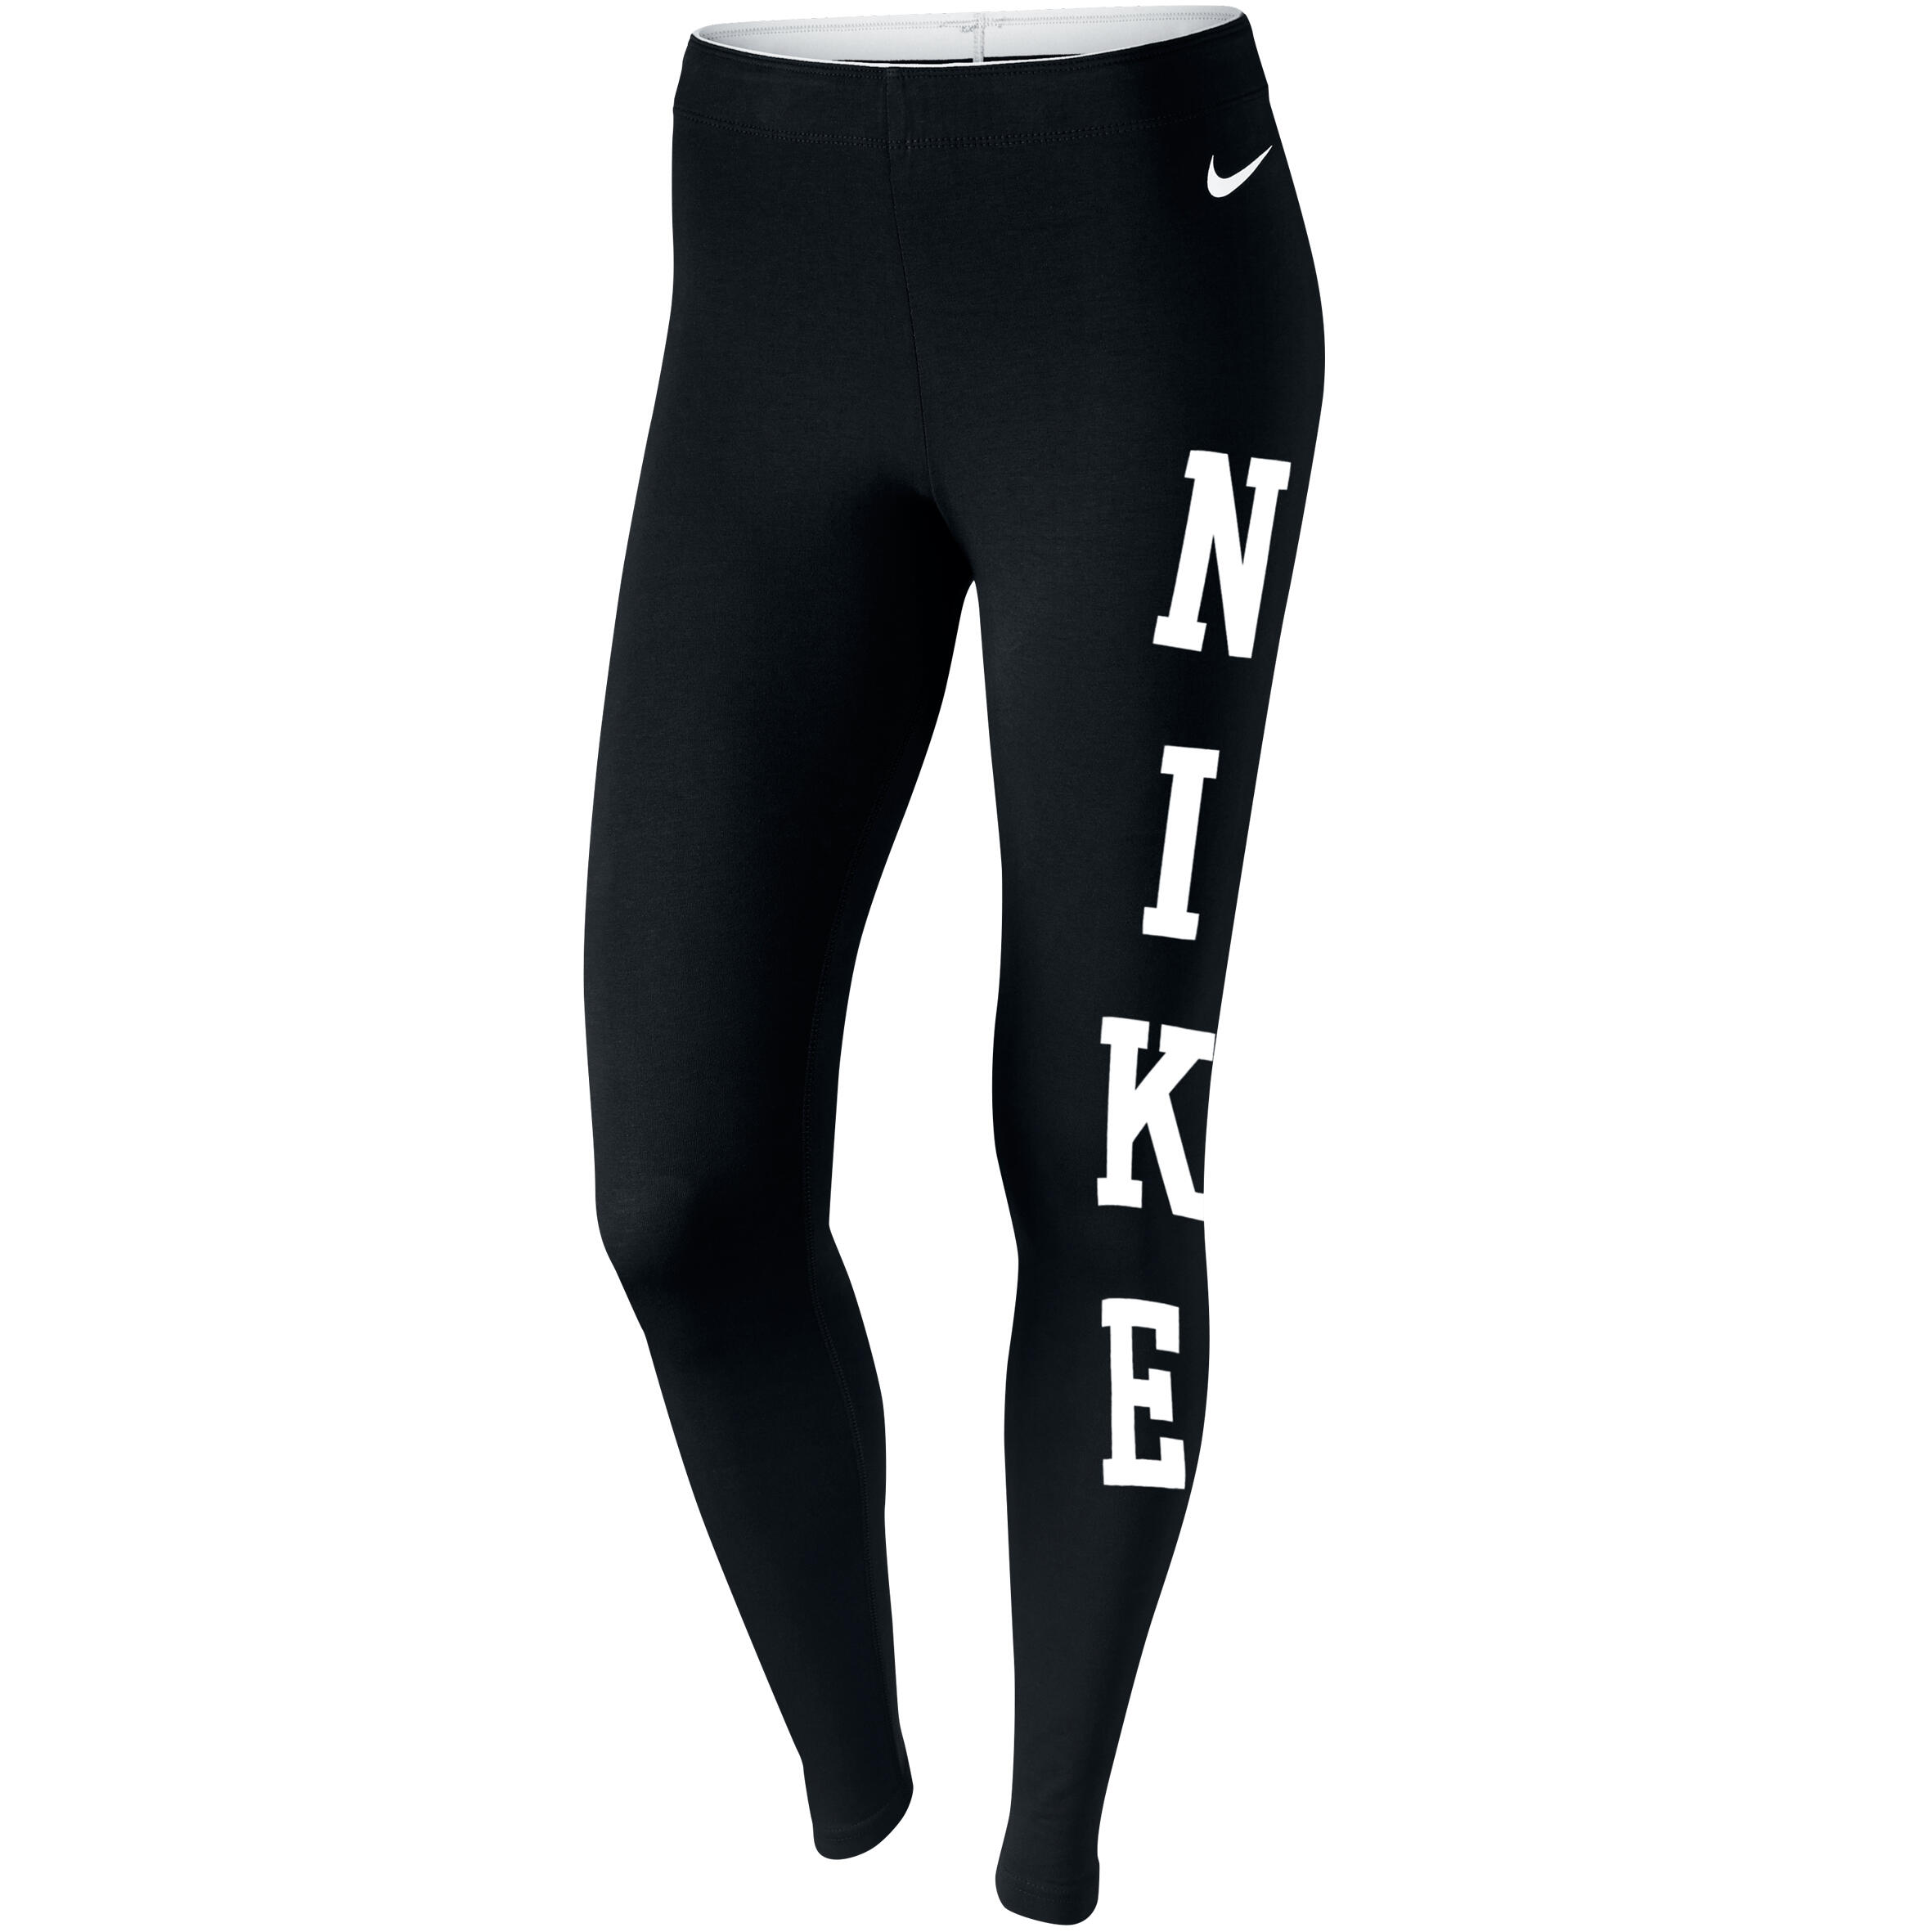 NIKE Women's Fitness Leggings - Black